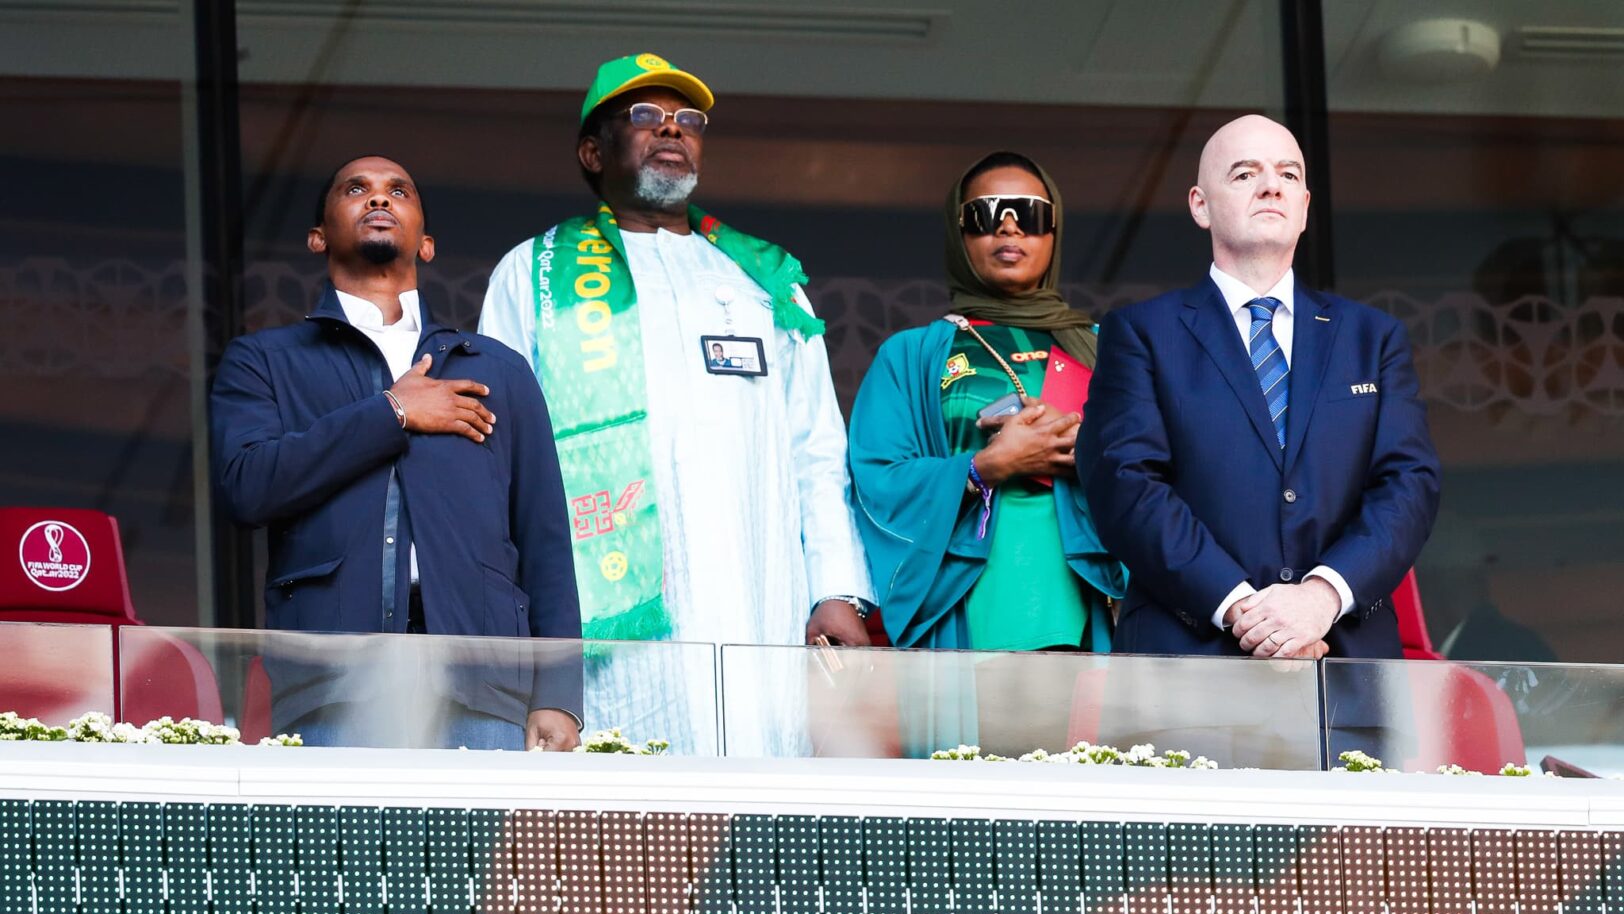 Cameroun : la réaction forte de la FIFA à l’annonce de Samuel Eto’o